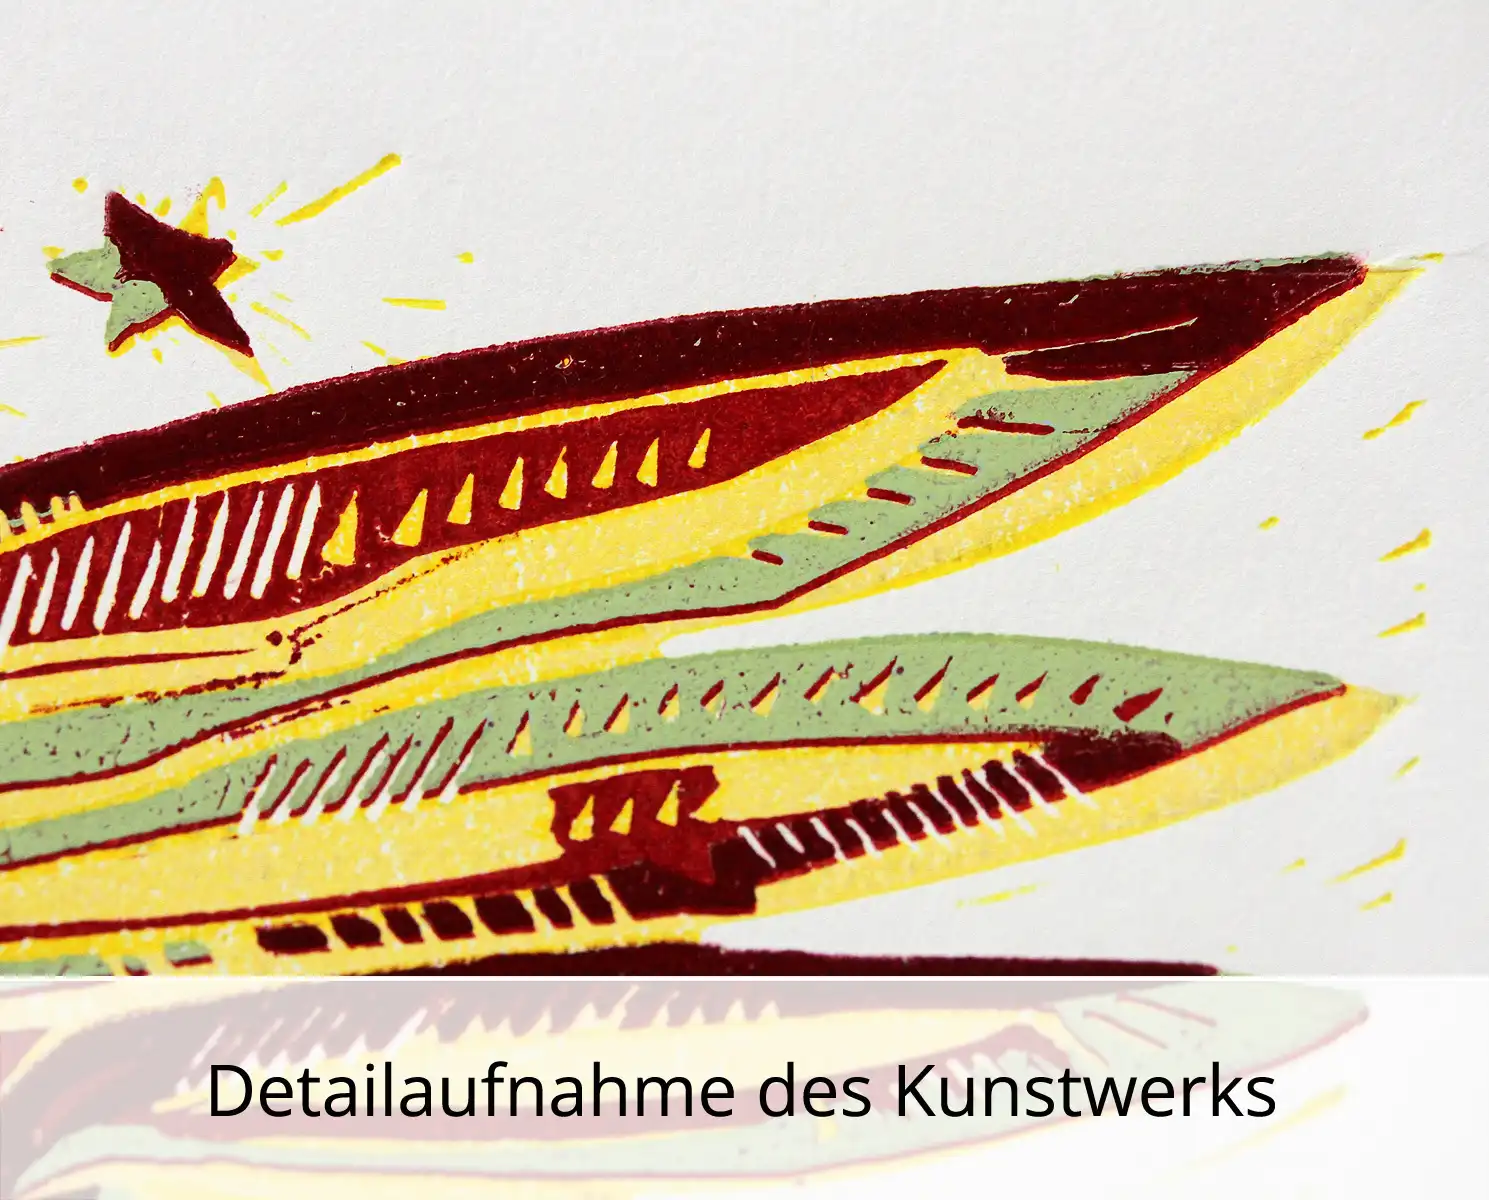 F.O. Haake: "Der erste Adam benennt das Einhorn (span. Variante, Nr. 1/2)", originale Grafik/serielles Unikat, mehrfarbiger Linoldruck